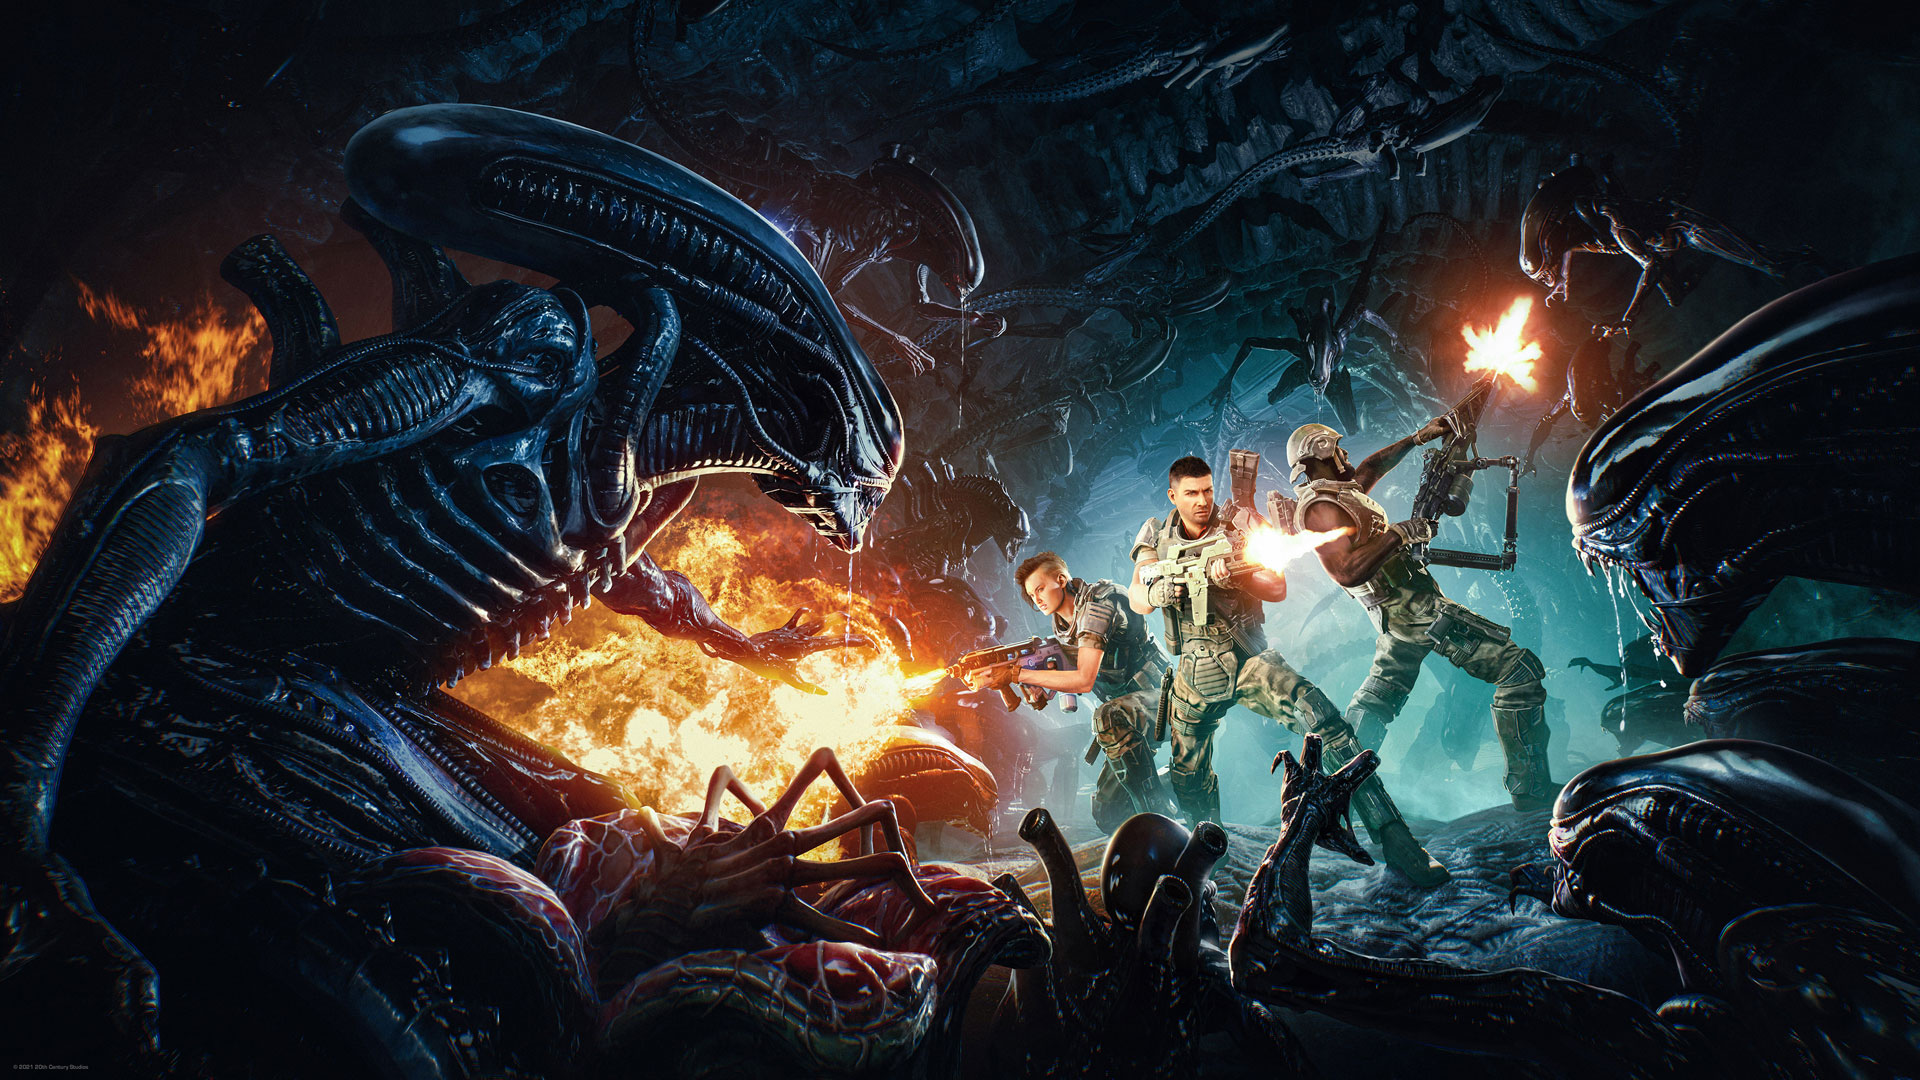 Aliens vs. Predator (Xbox One) - Full Game 1080p60 HD (3 Campaigns